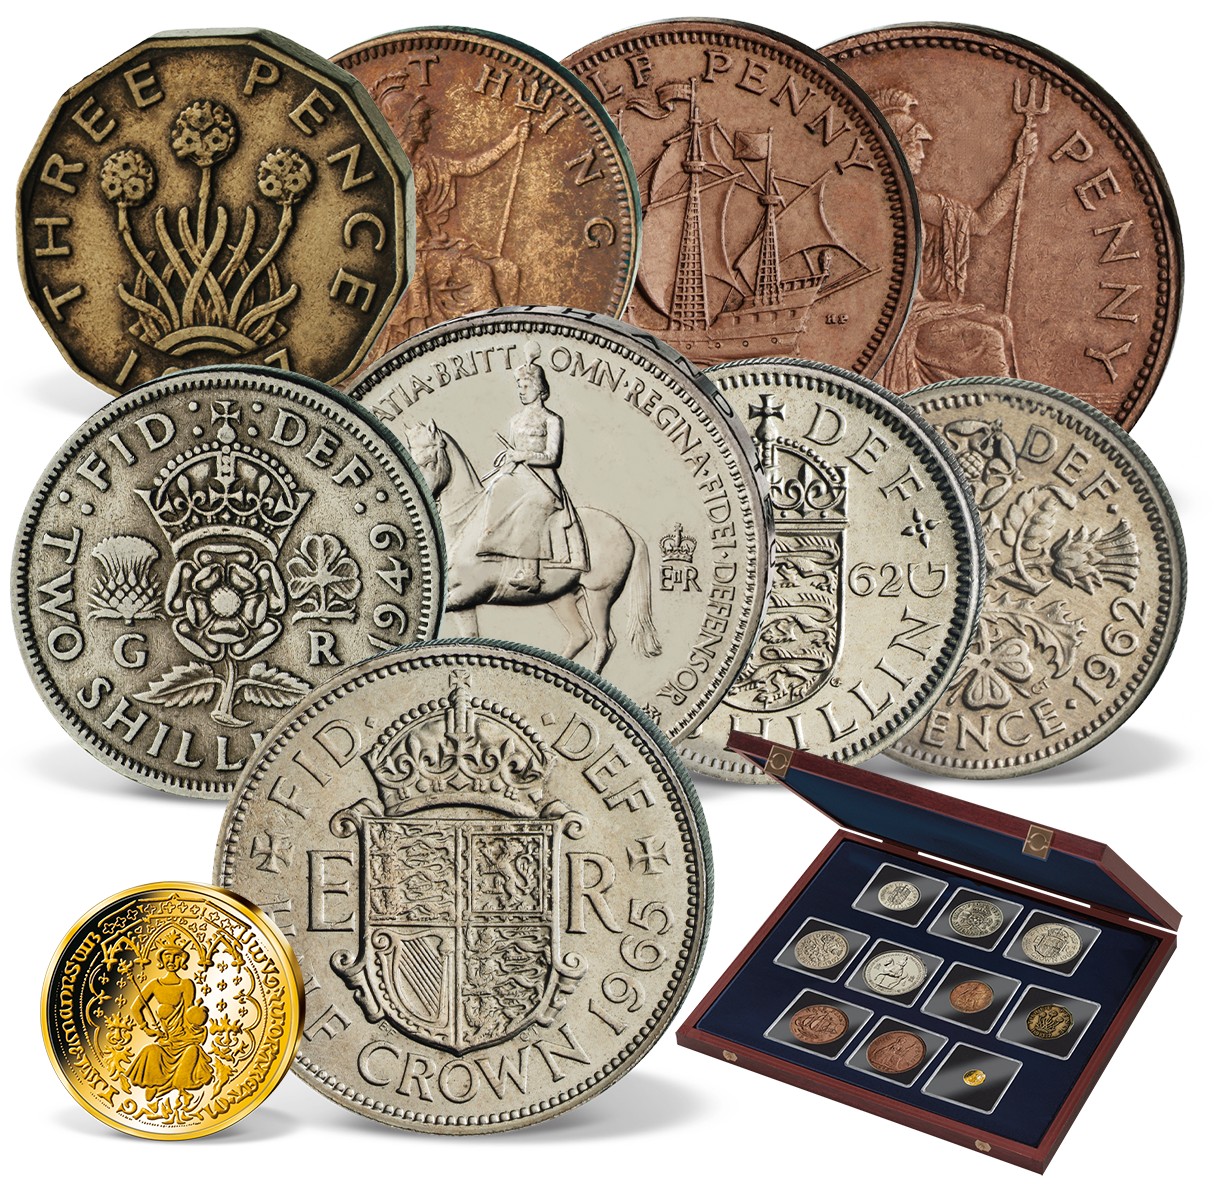 presentation coins uk